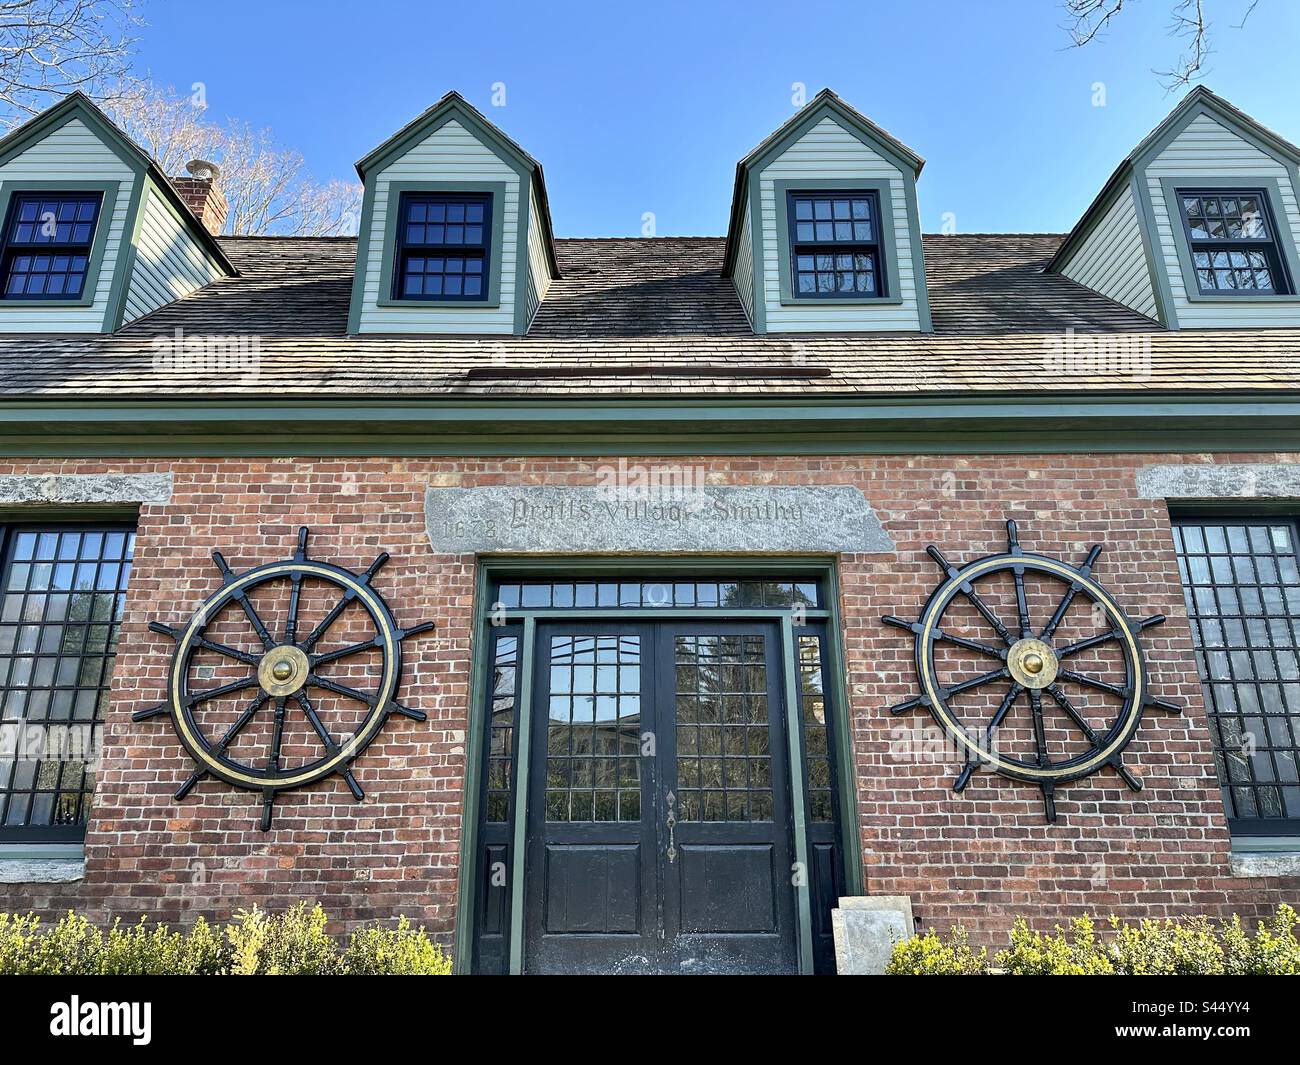 Le village Smith de Pratt. Bâtiment historique d'Essex, Connecticut, États-Unis. Architecture en brique rouge avec porte noire et roues capitaine de chaque côté. Banque D'Images